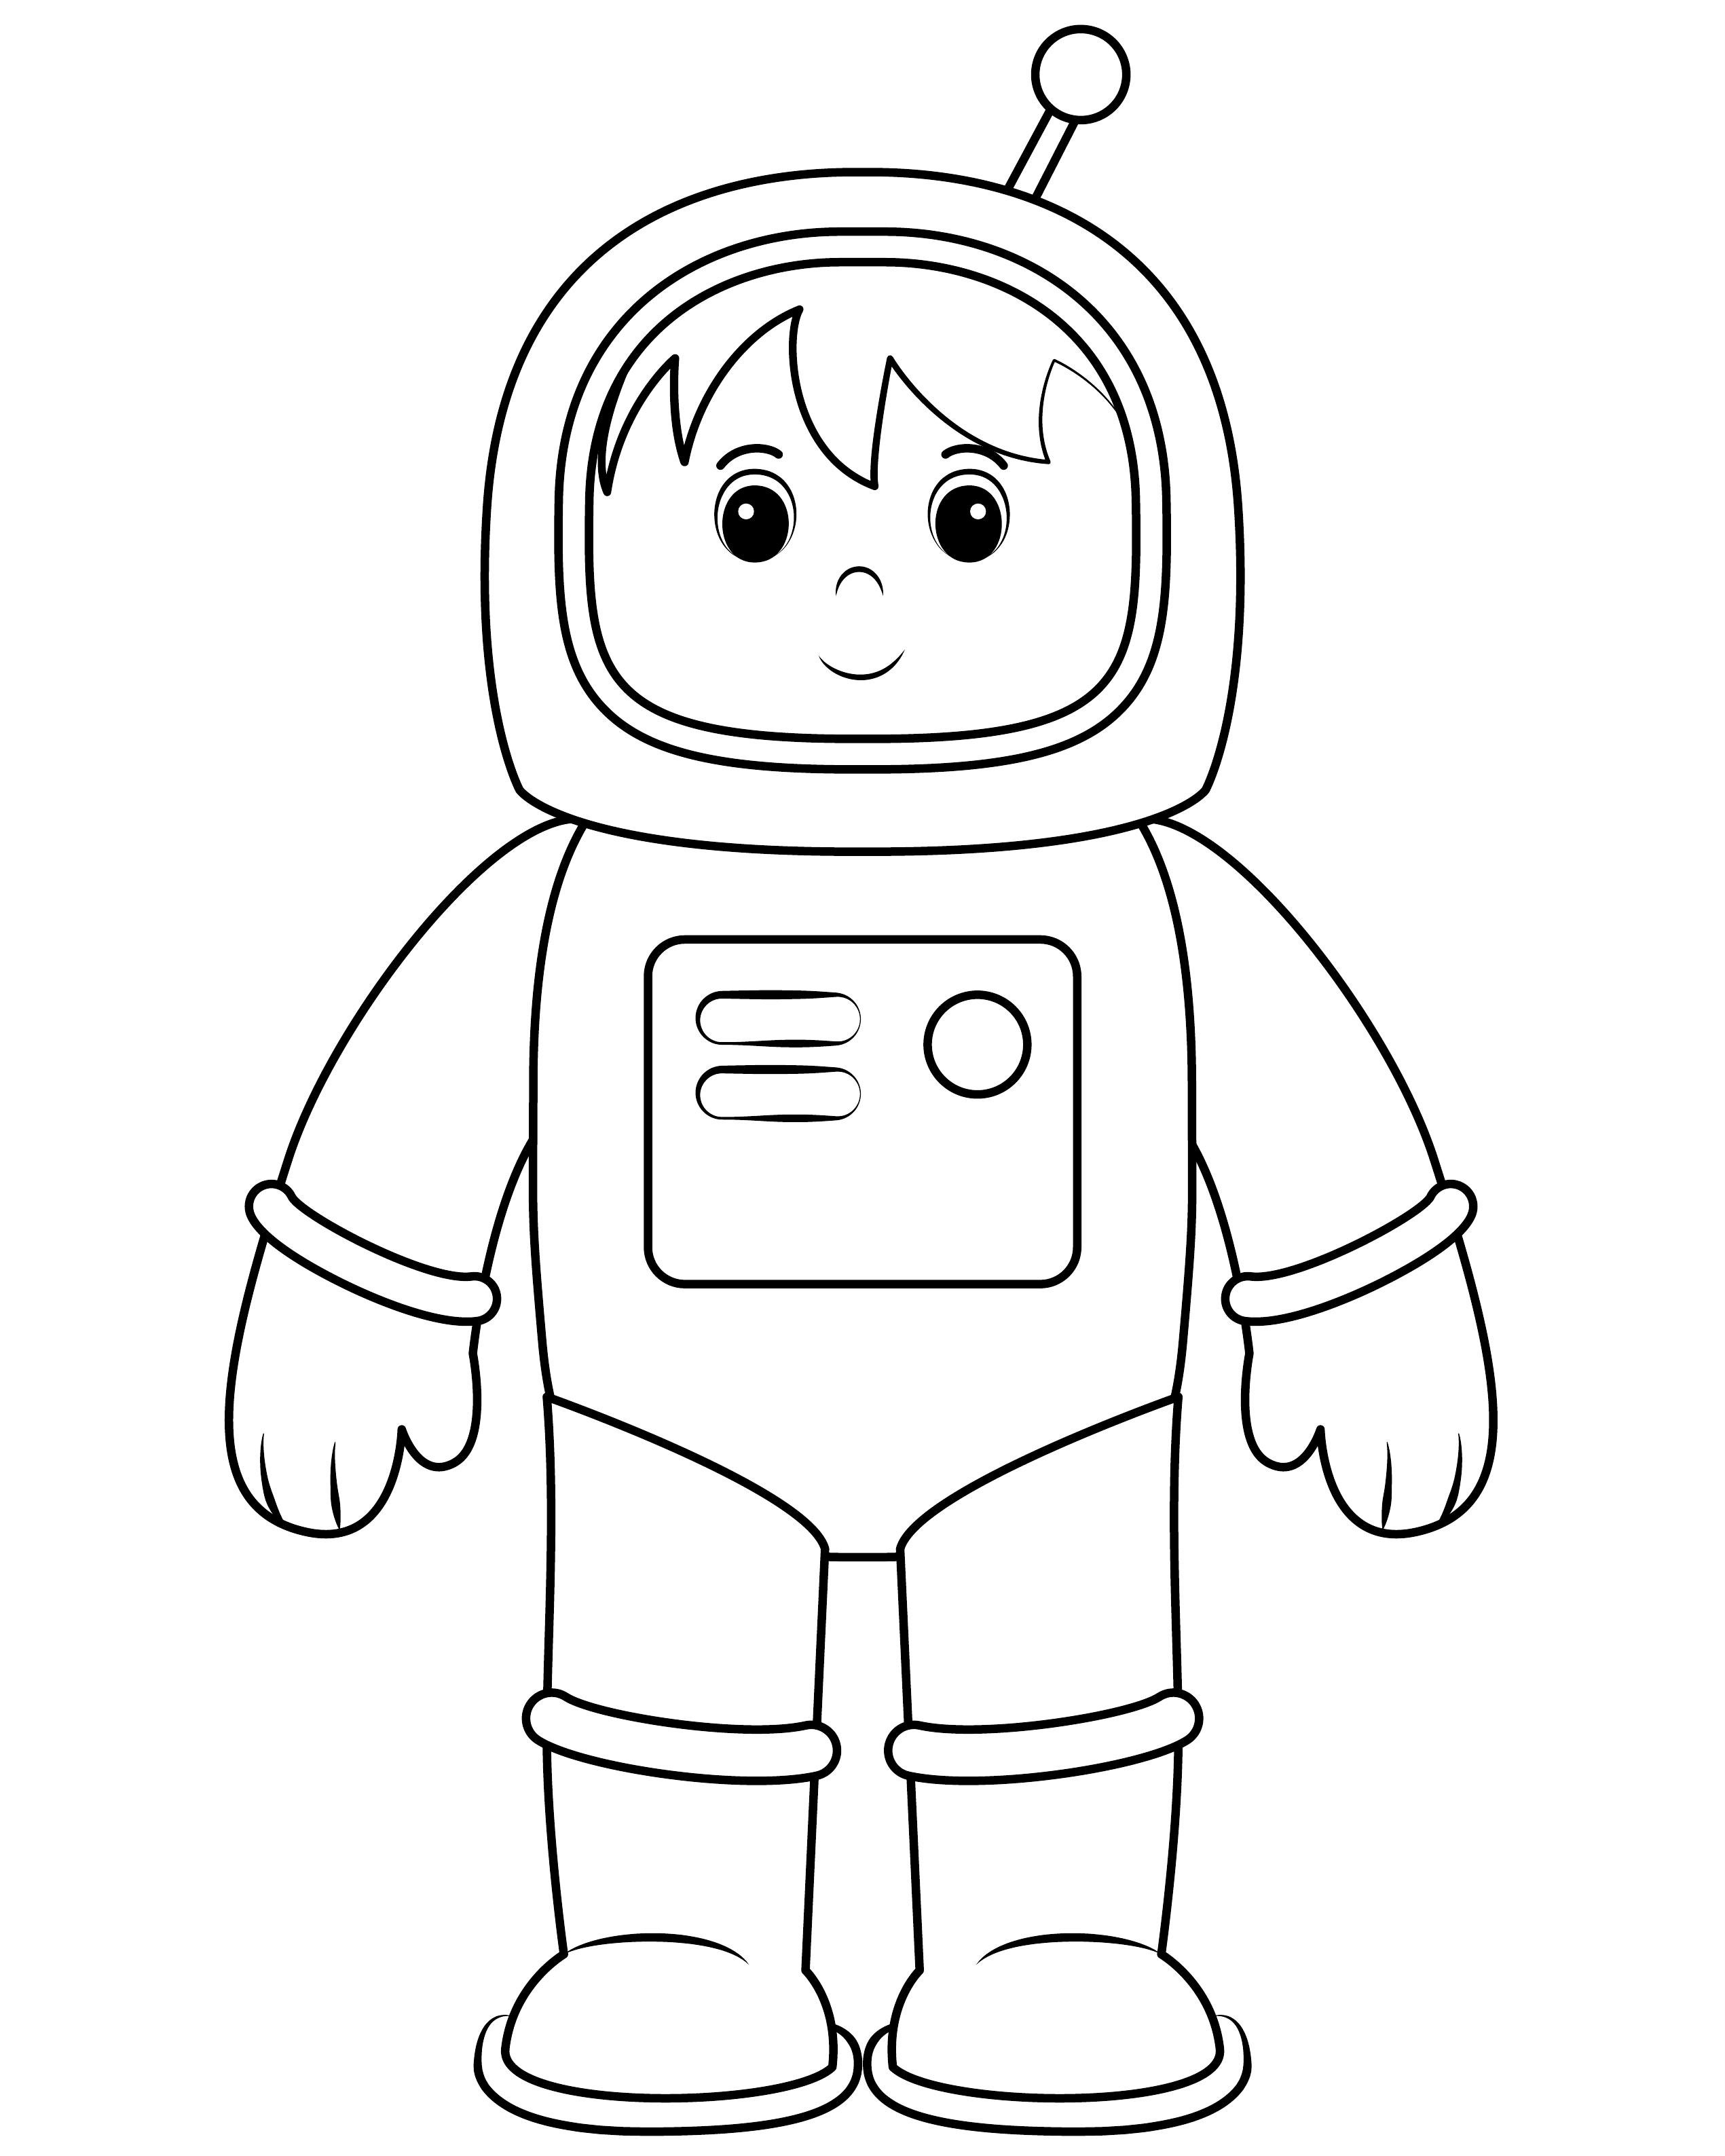 Шаблон космонавта для аппликации для детей. Космонавт раскраска для детей. Космонавт раскраска для малышей. Космонавт для раскрашивания для детей. Раскраска Космонавта в скафандре для детей.